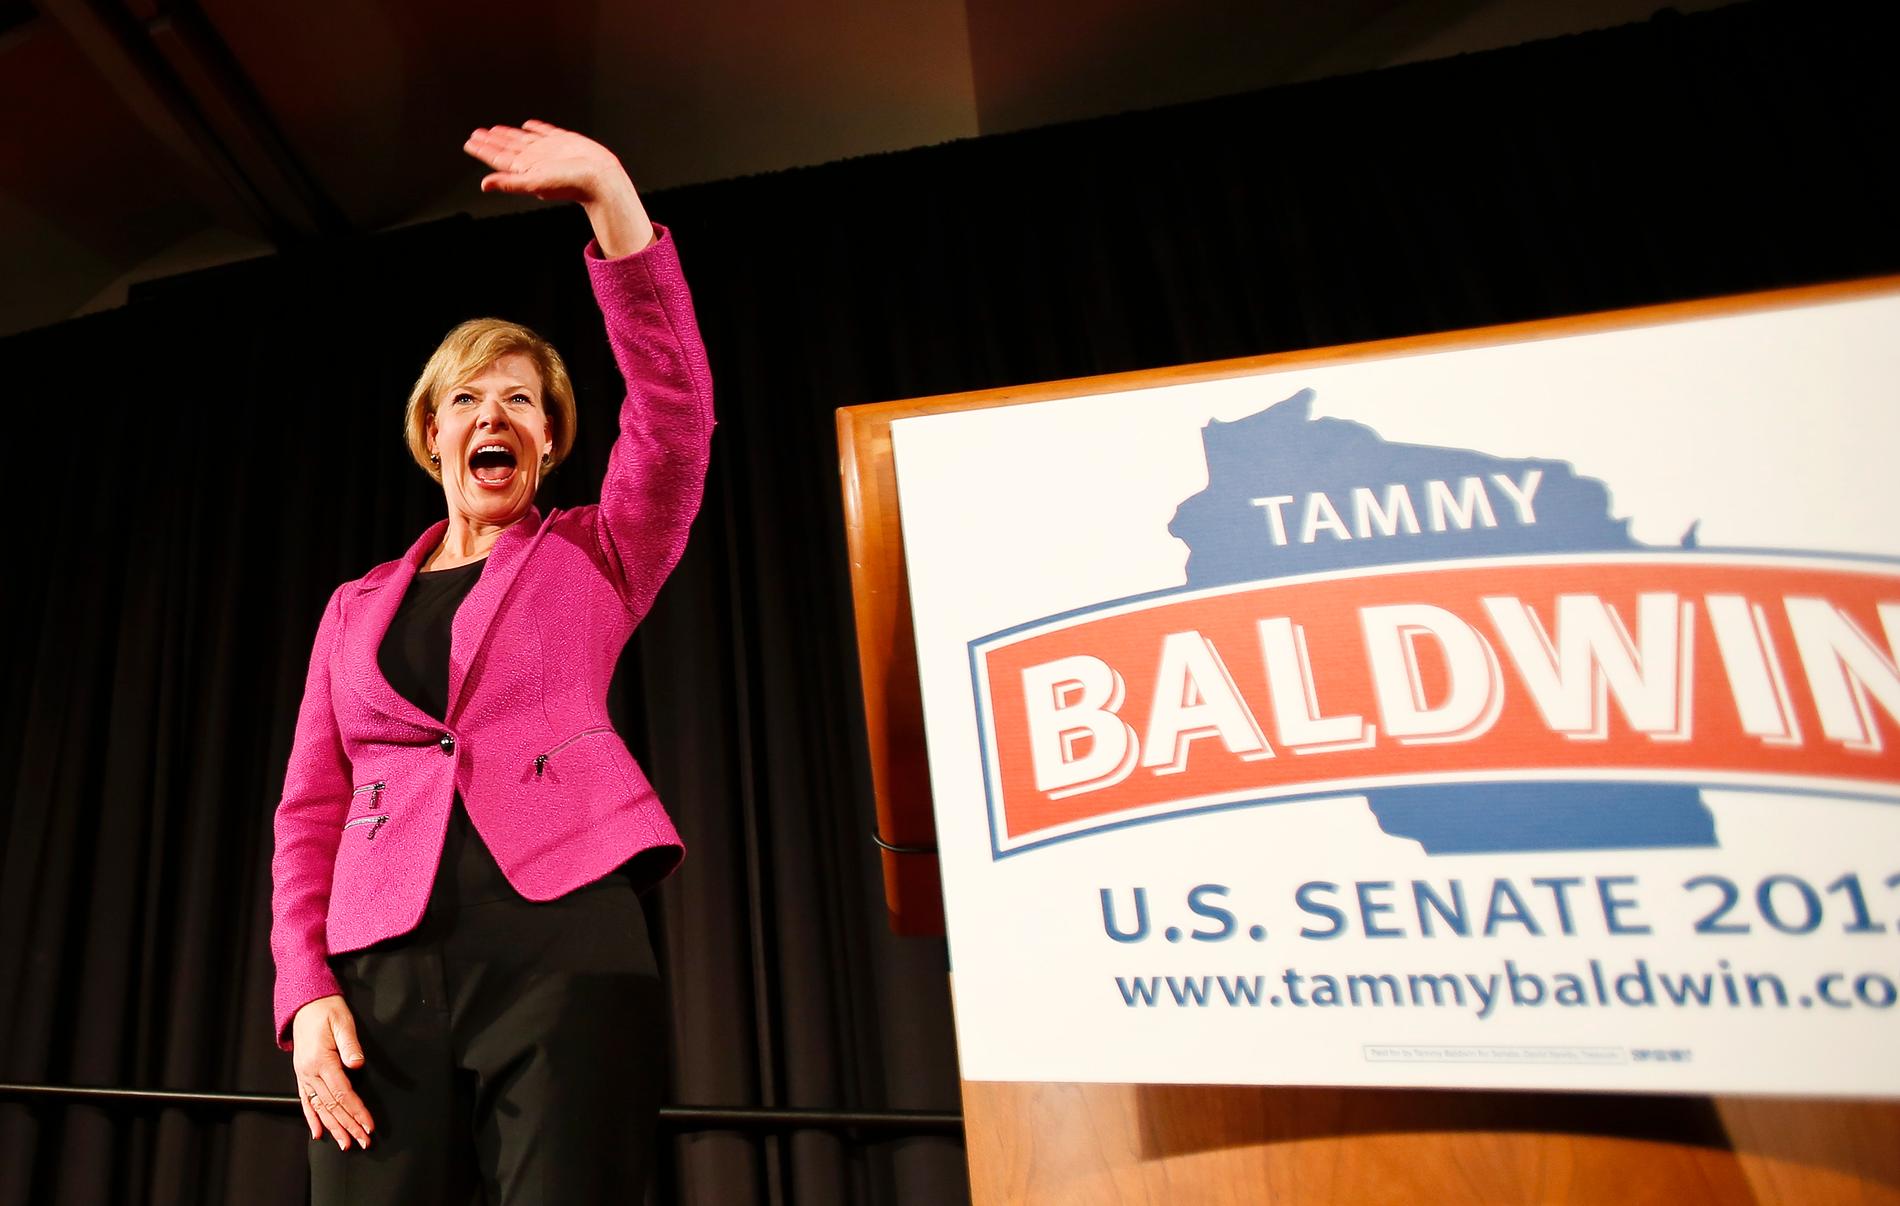 Tammy Baldwin, demokratisk senator från Wisconsin, är en förebild för många hbtq-personer med politiska ambitioner. 2012 blev hon den första öppet homosexuella att väljas in i USA:s senat och tio år tidigare den första dito att väljas in i representanthuset. Hon hoppas bli omvald den 6 november.